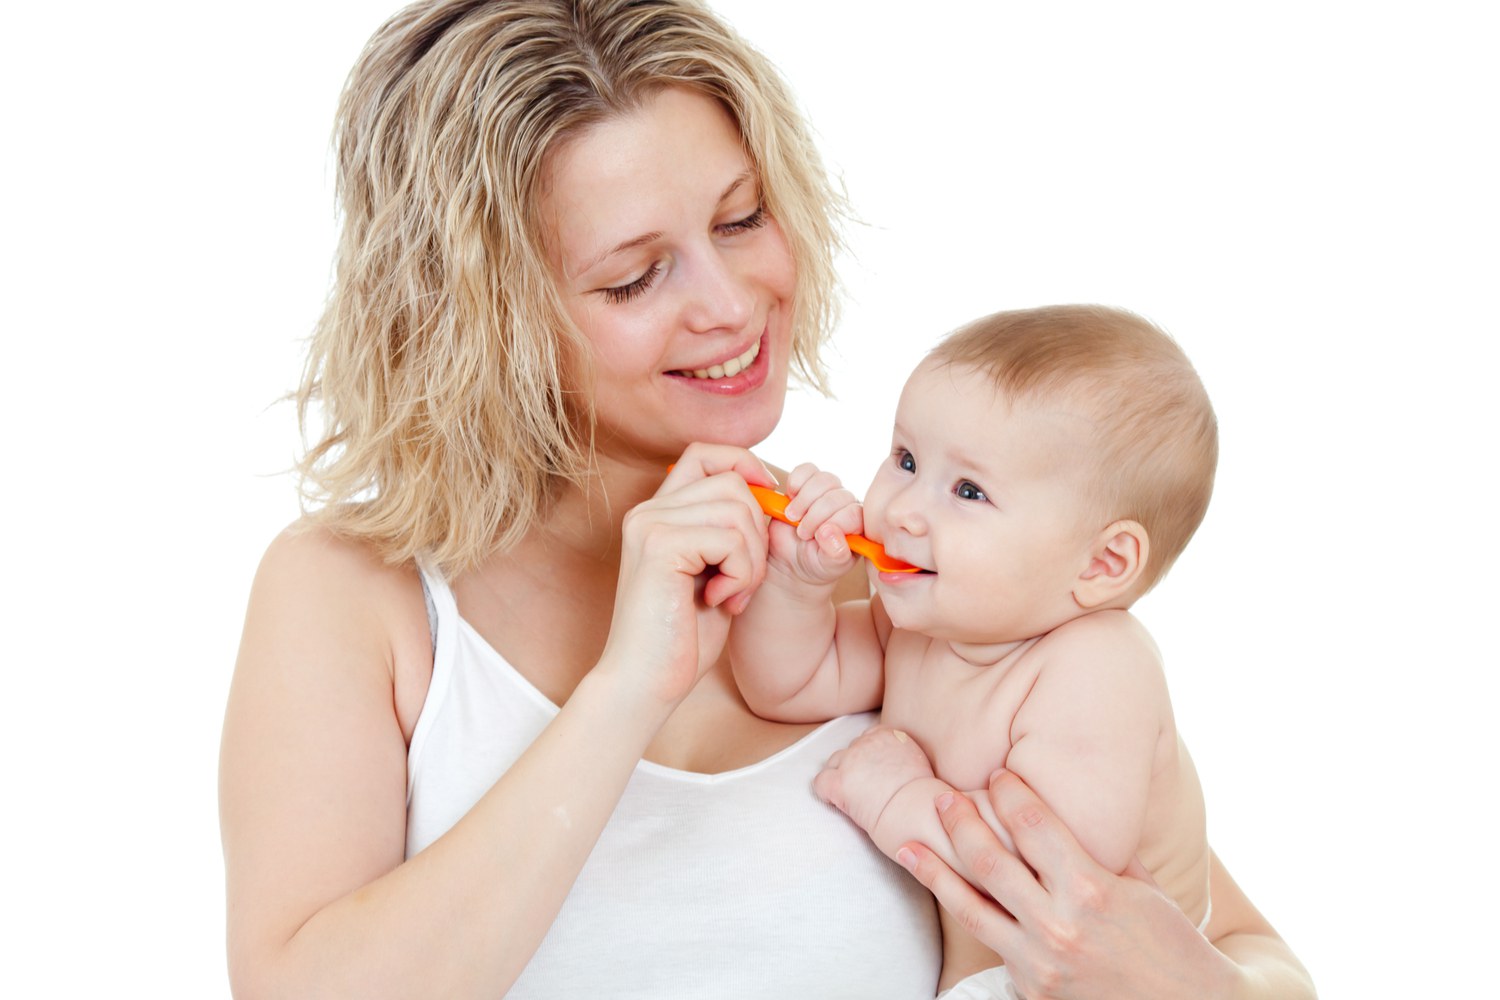 Top 5 Health Benefits of Cherries for Babies